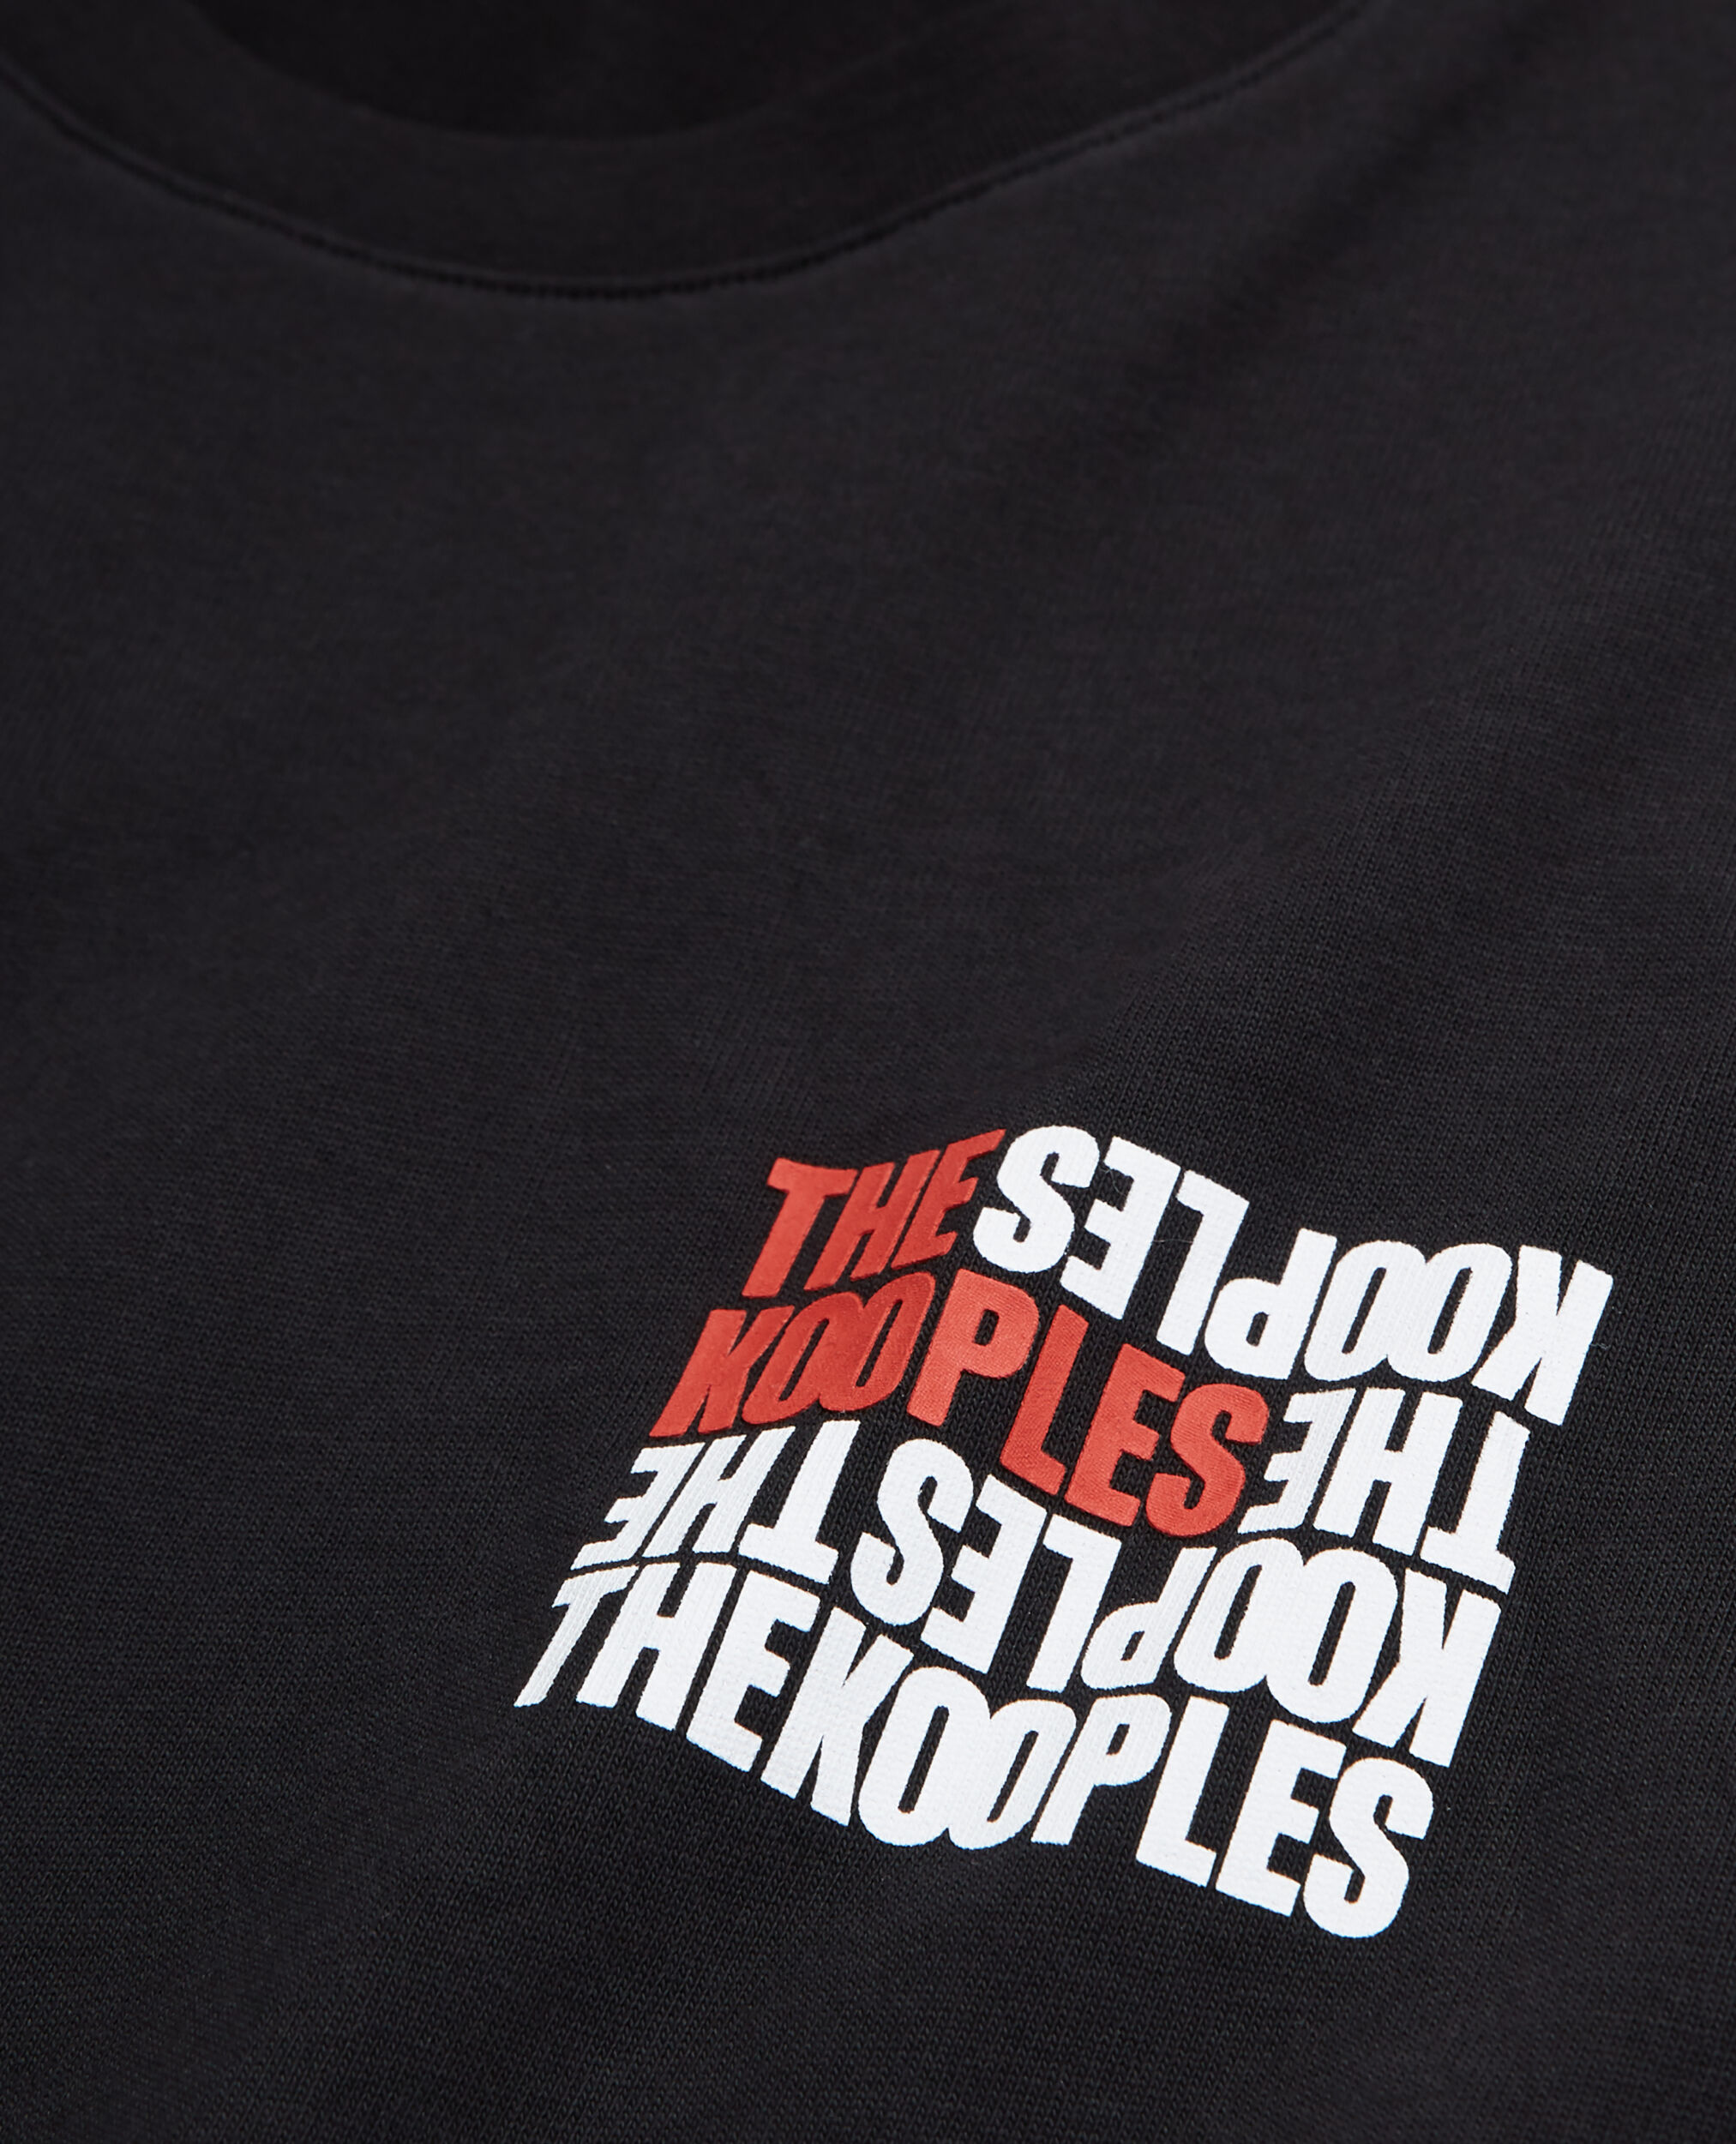 Schwarzes T-Shirt Herren mit The Kooples Logo, BLACK, hi-res image number null